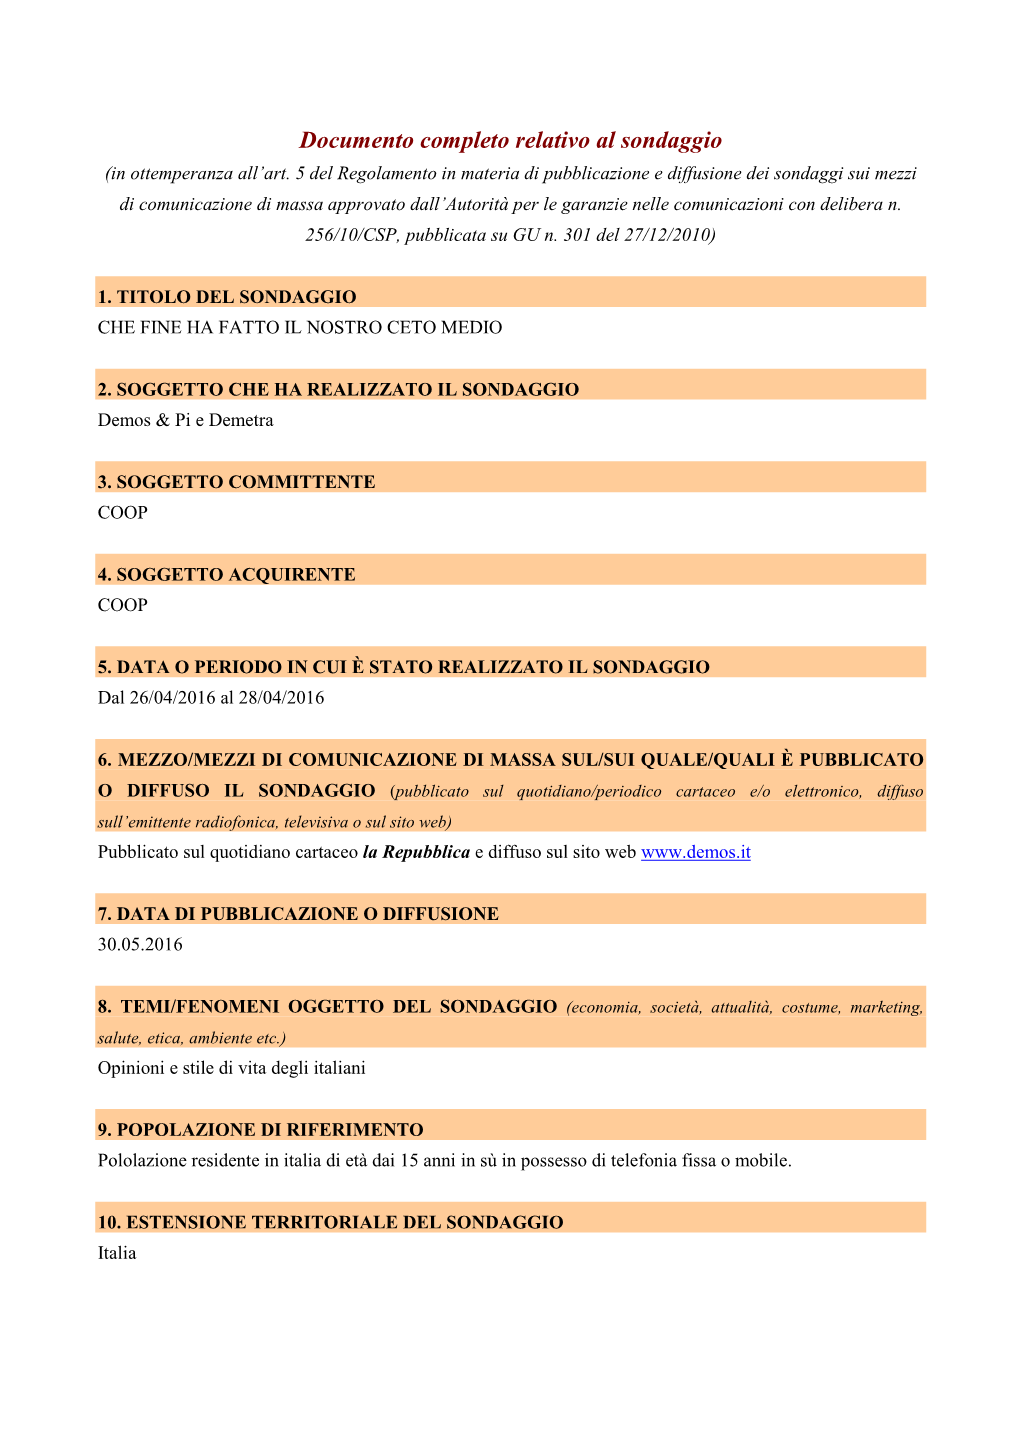 Documento Completo Relativo Al Sondaggio (In Ottemperanza All’Art